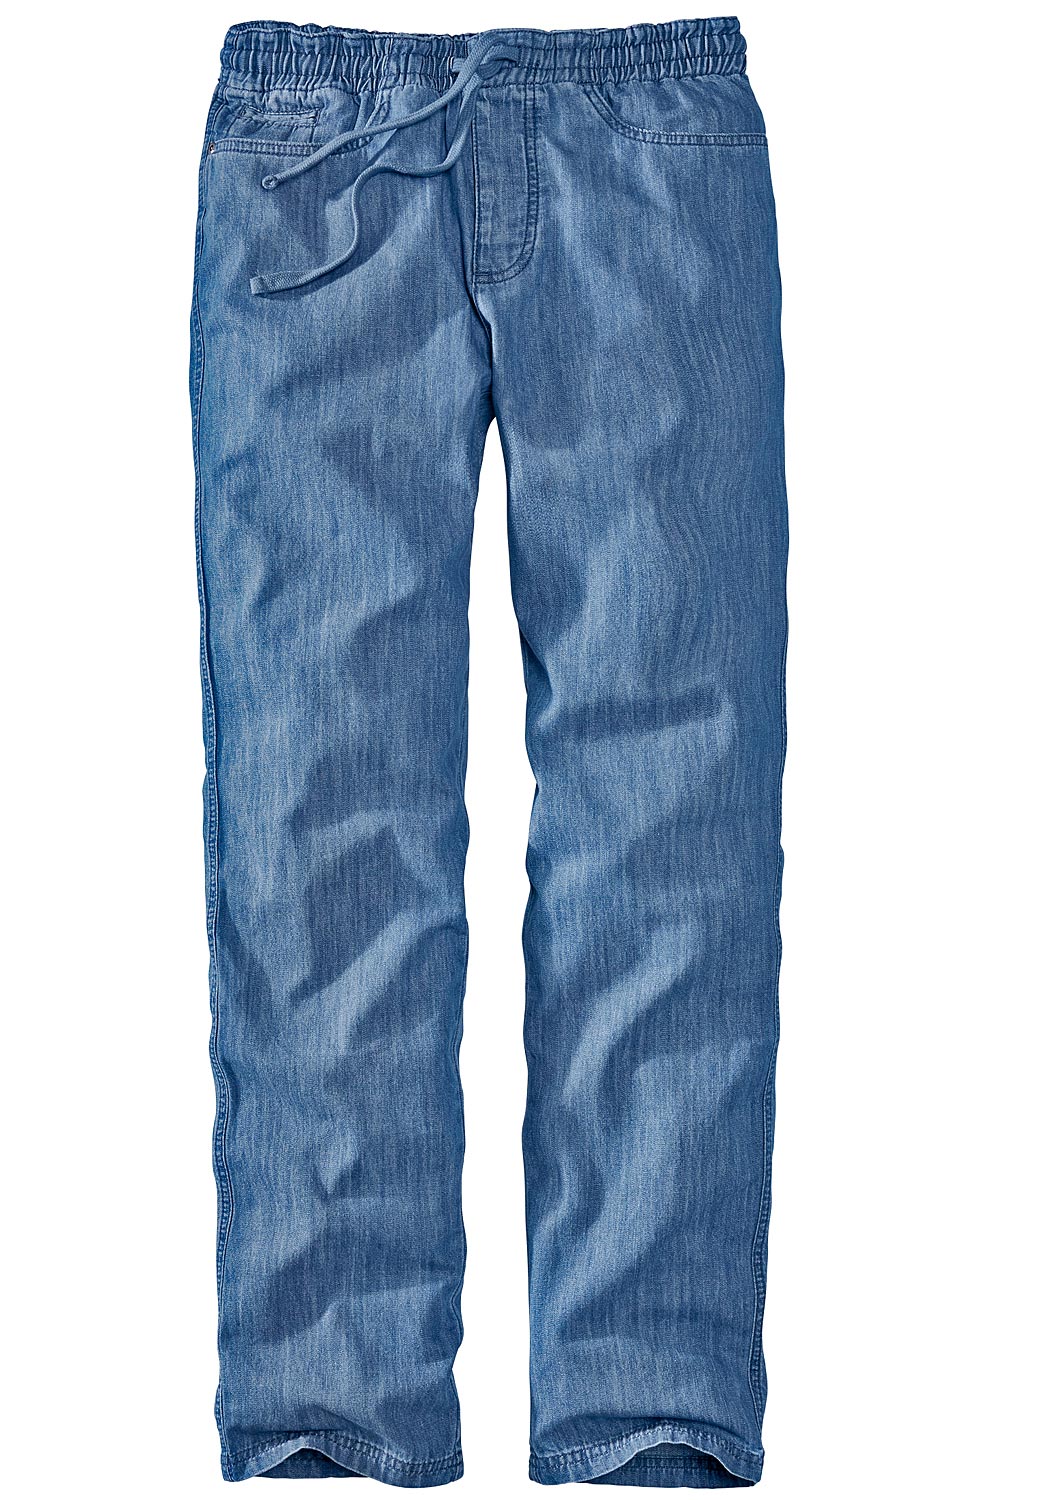 Eddie Bauer Herren Hose Dehnbund Jeans Strech Comfort Bund Jeanshose blau M